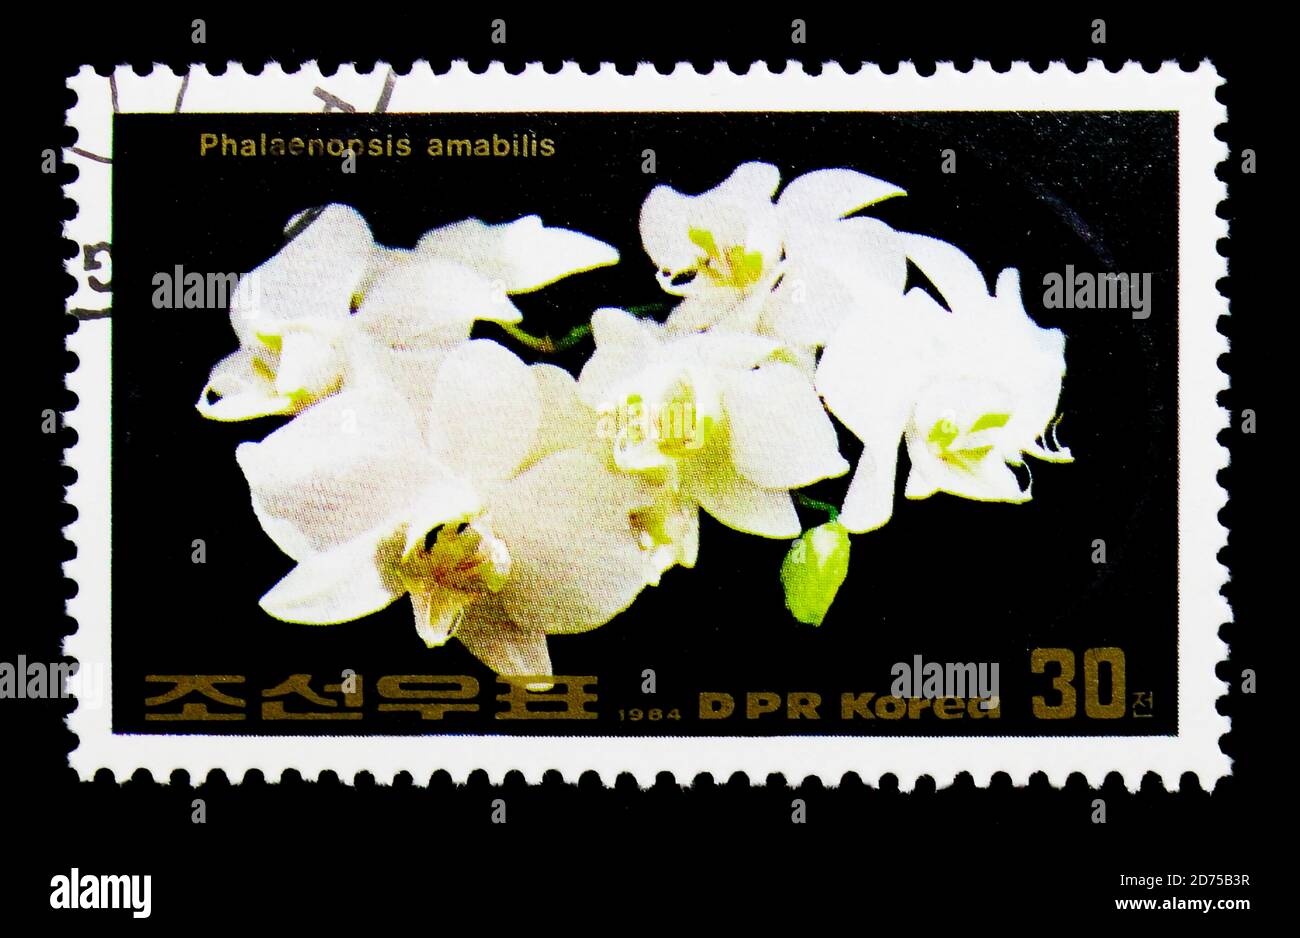 MOSCOU, RUSSIE - 25 NOVEMBRE 2017 : un timbre imprimé en république populaire démocratique de Corée montre Phalaenopsis amabilis, série de fleurs, vers 1984 Banque D'Images